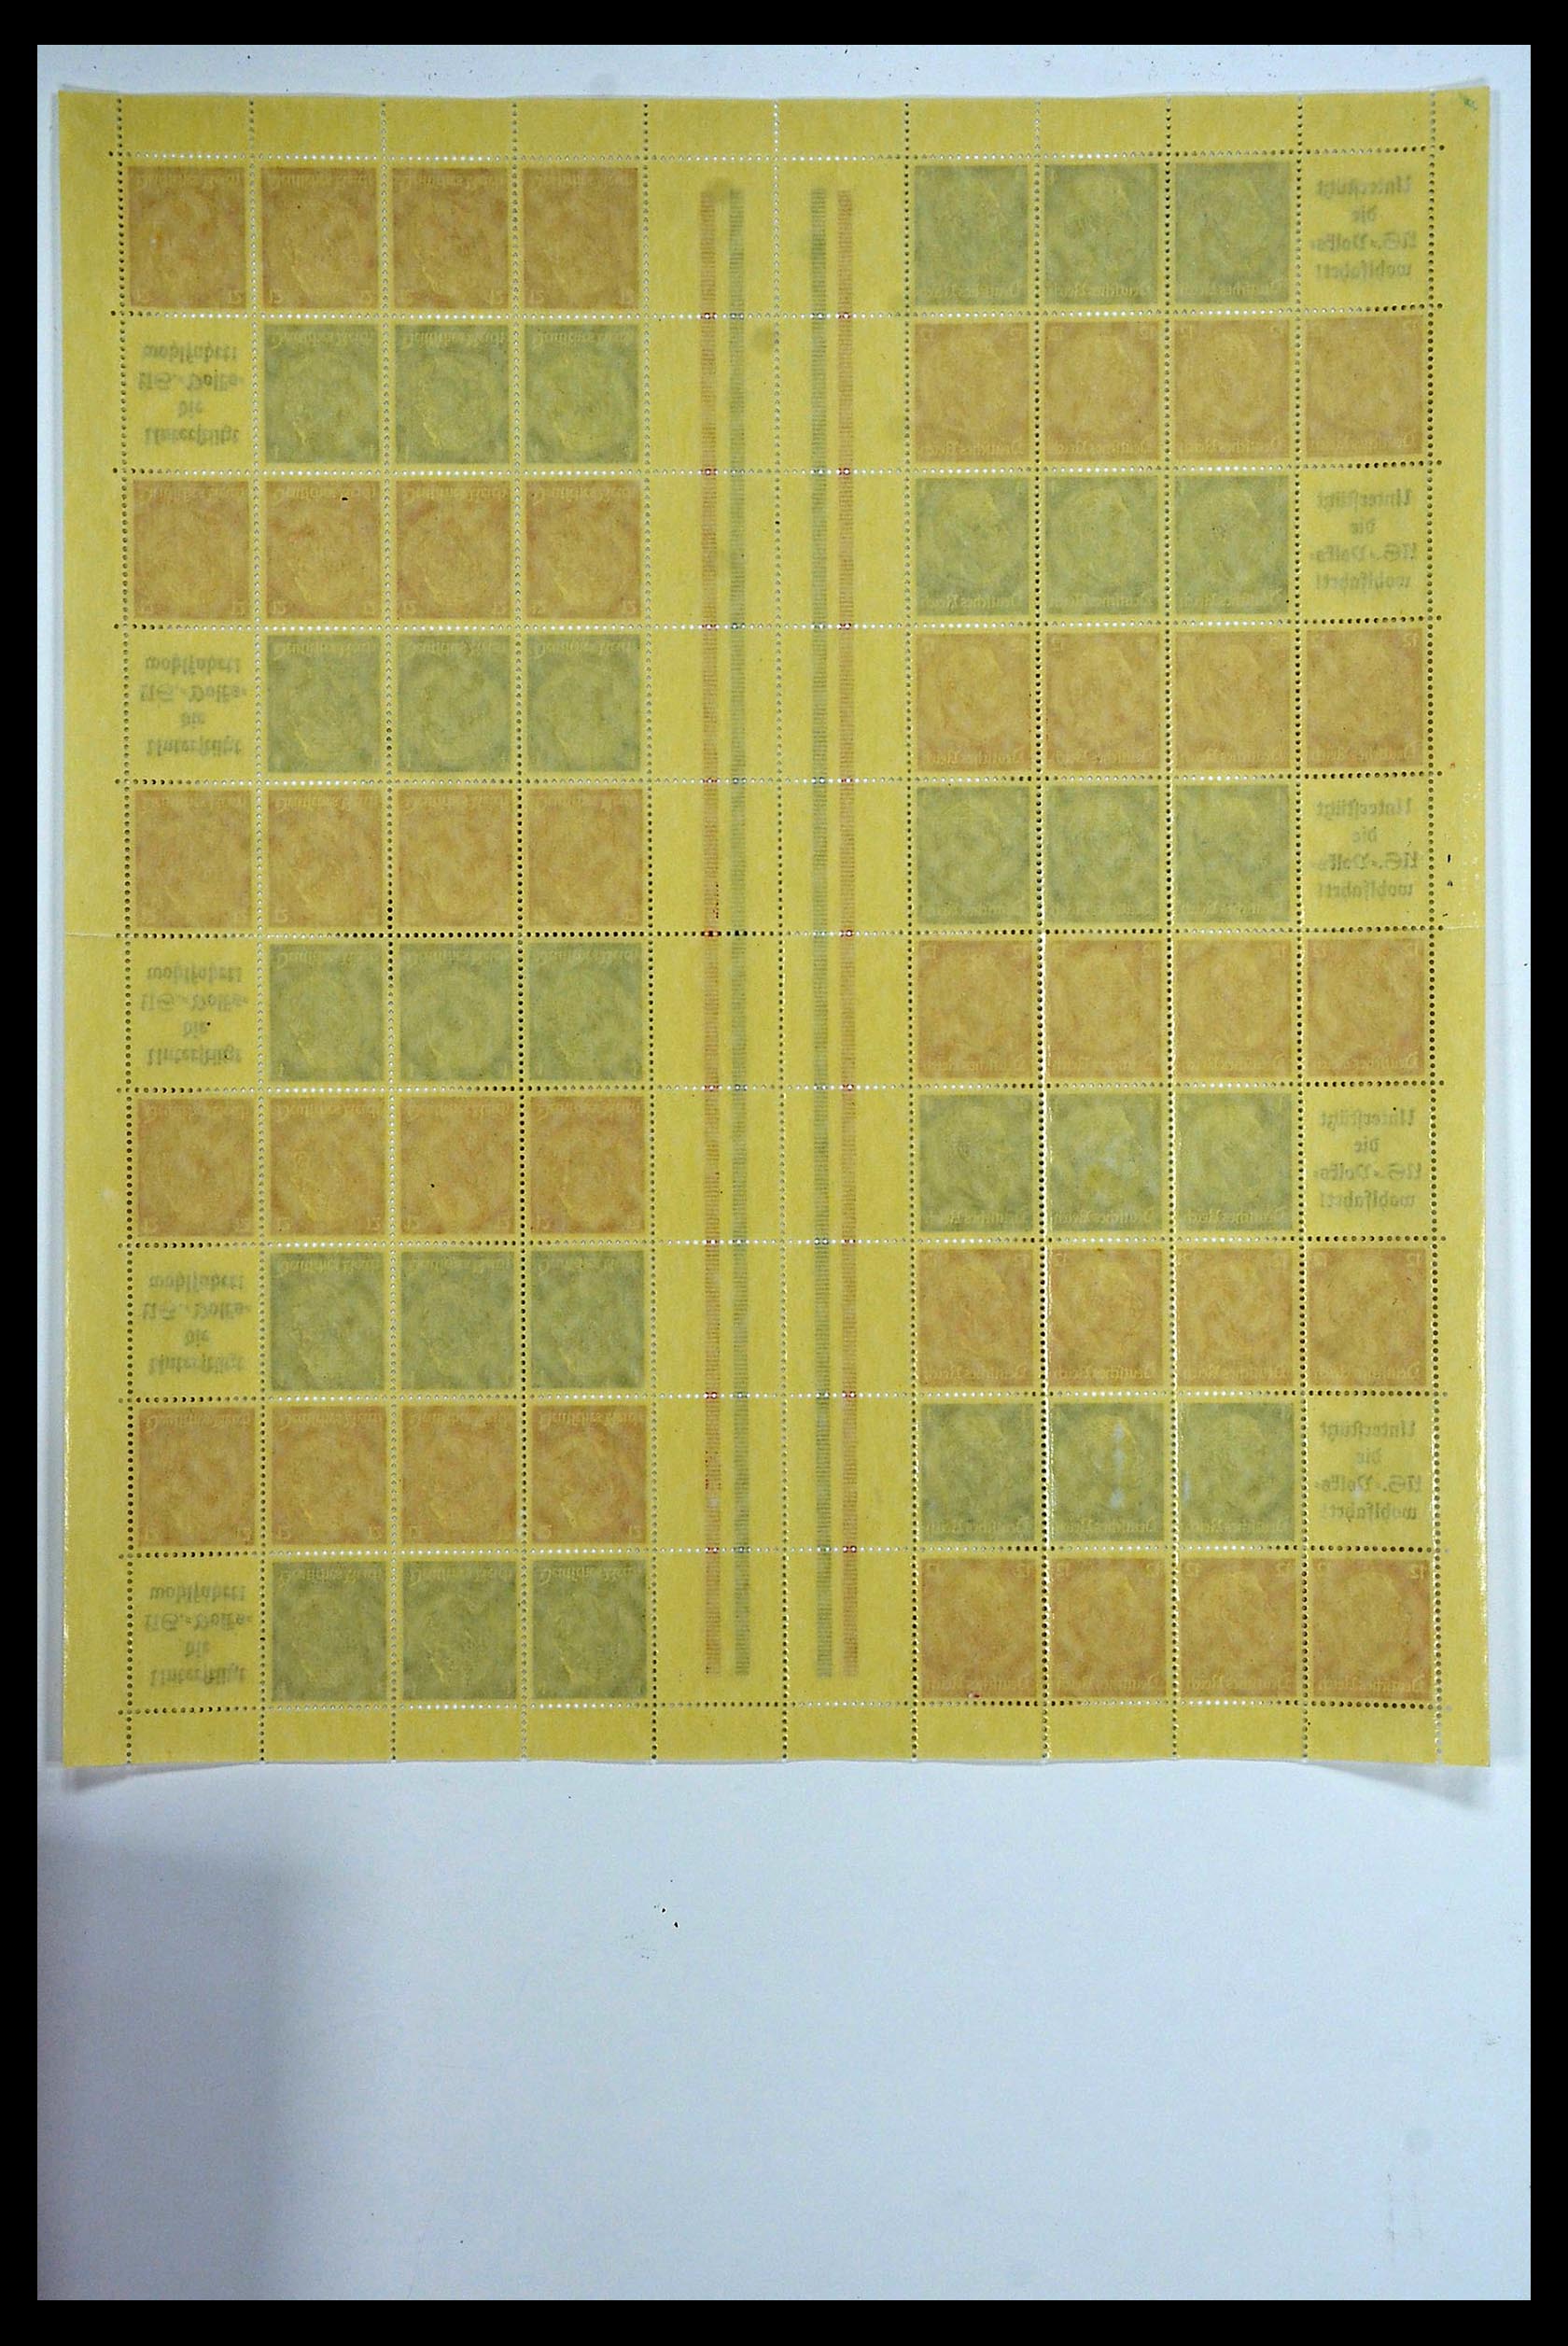 34164 022 - Stamp collection 34164 German Reich Markenheftchenbogen 1933-1942.